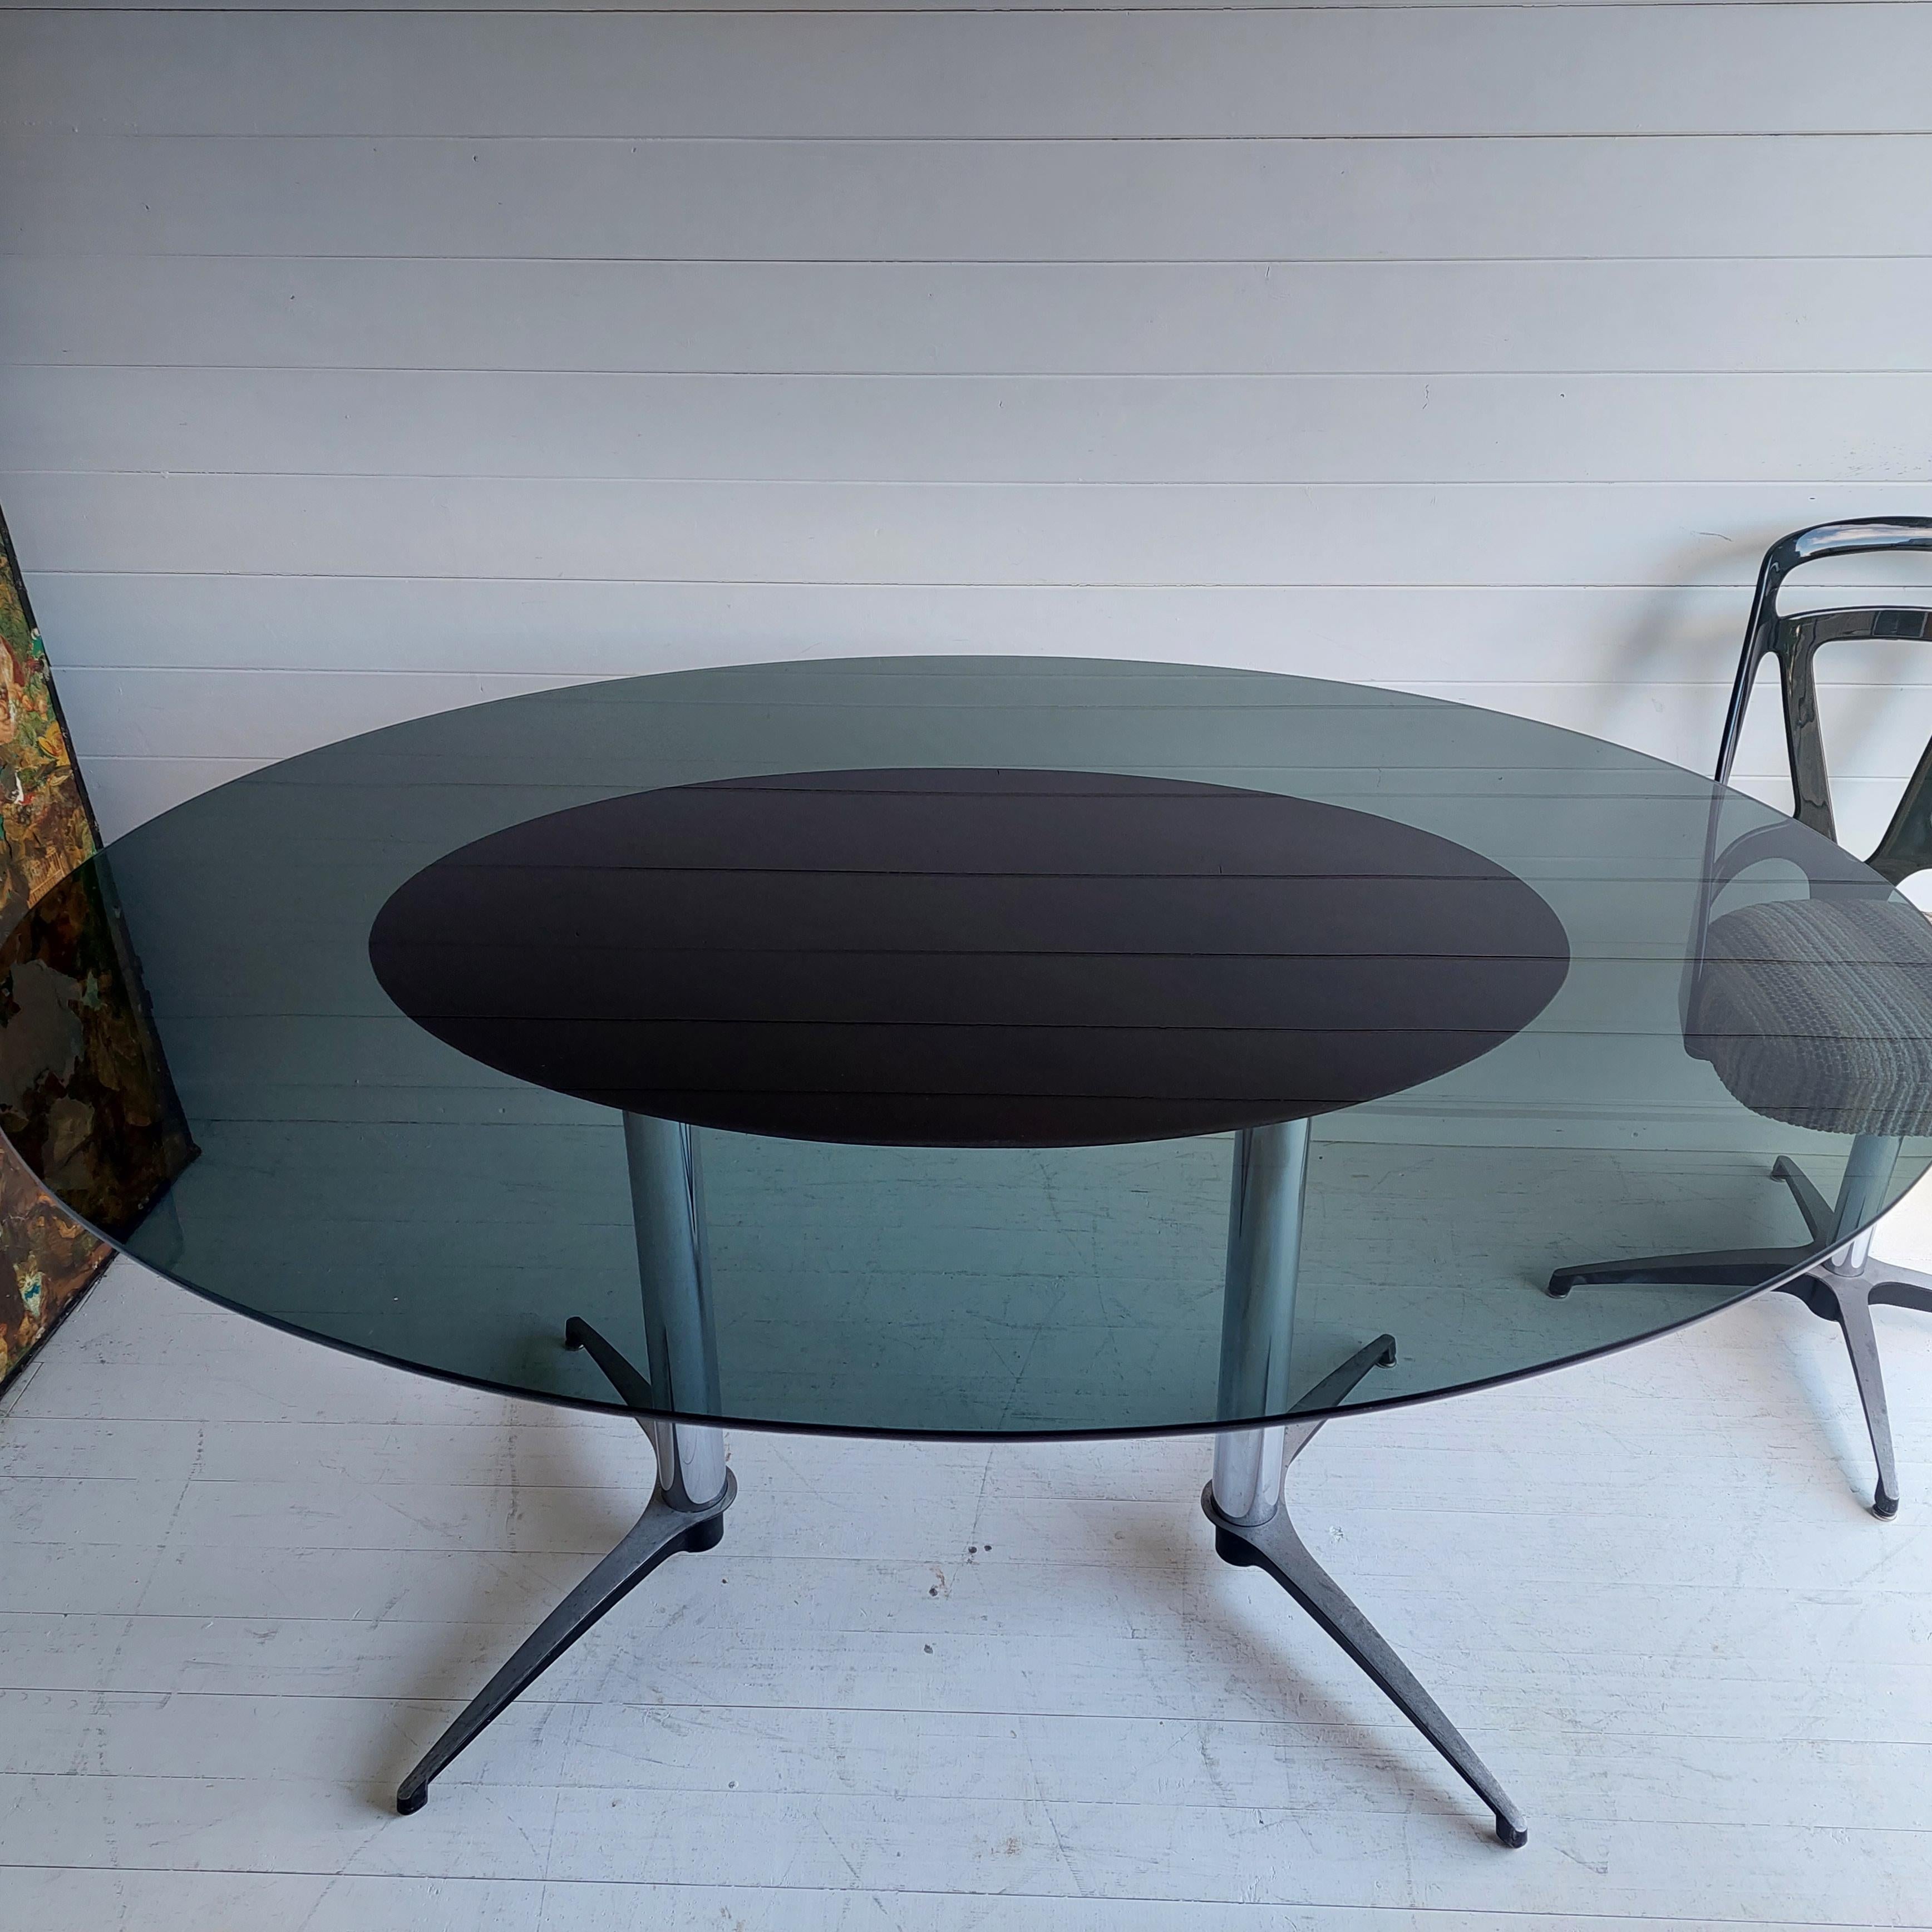 Retro Chromcraft USA Grafton Atomic Esstisch.
Eine fantastische und äußerst stilvolle Esszimmereinrichtung von 1972.

Ein großer ovaler Esszimmertisch mit einer Platte aus Rauchglas und Beinen aus Aluminiumguss.

Dieser Tisch ist in einem für sein